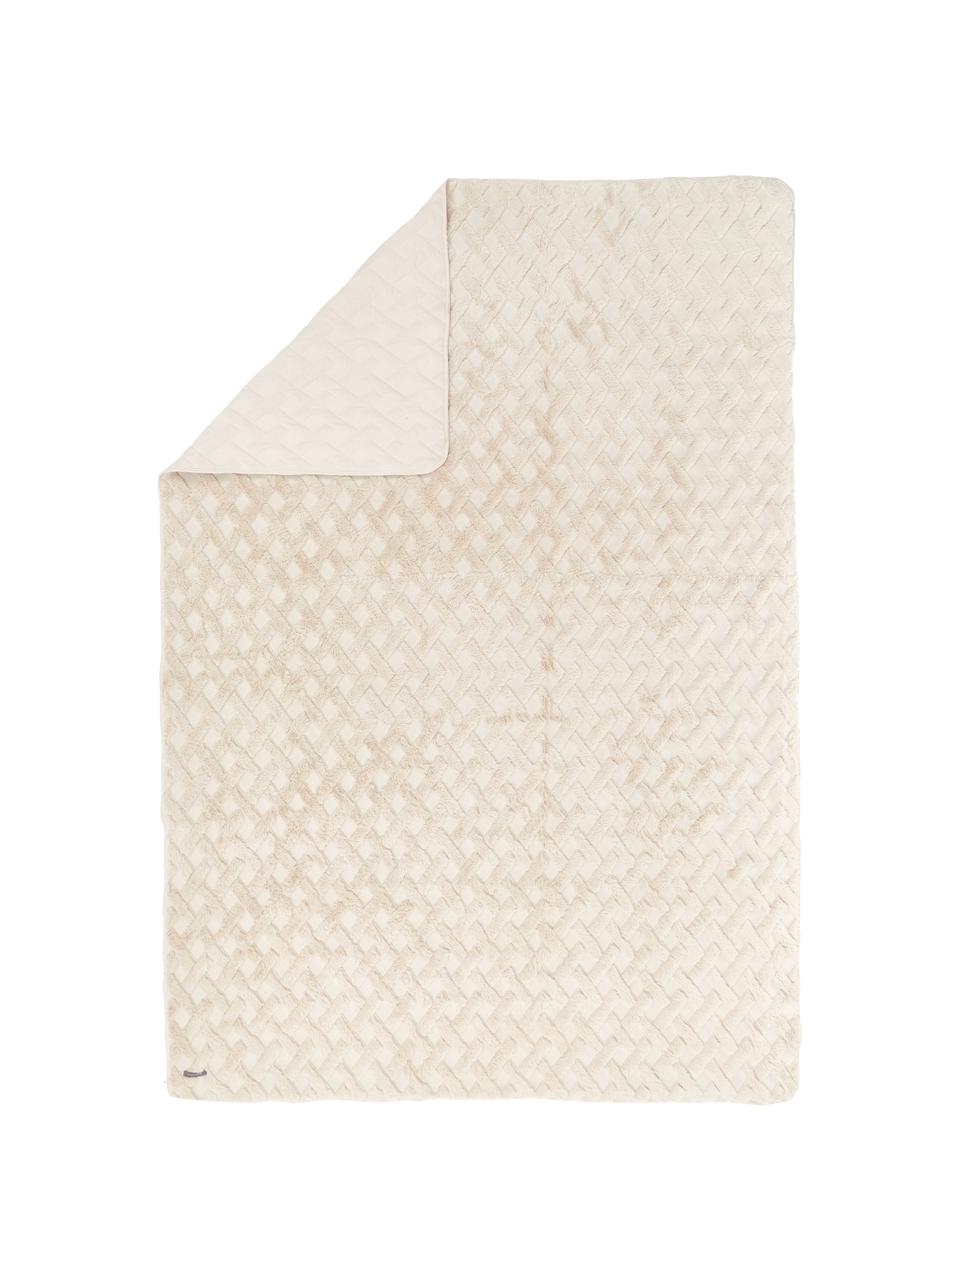 Copriletto bianco crema con motivo alto-basso Natur, 100% poliestere, Bianco crema, Larg. 260 x Lung. 260 cm (per letti da 160 x 200 cm)